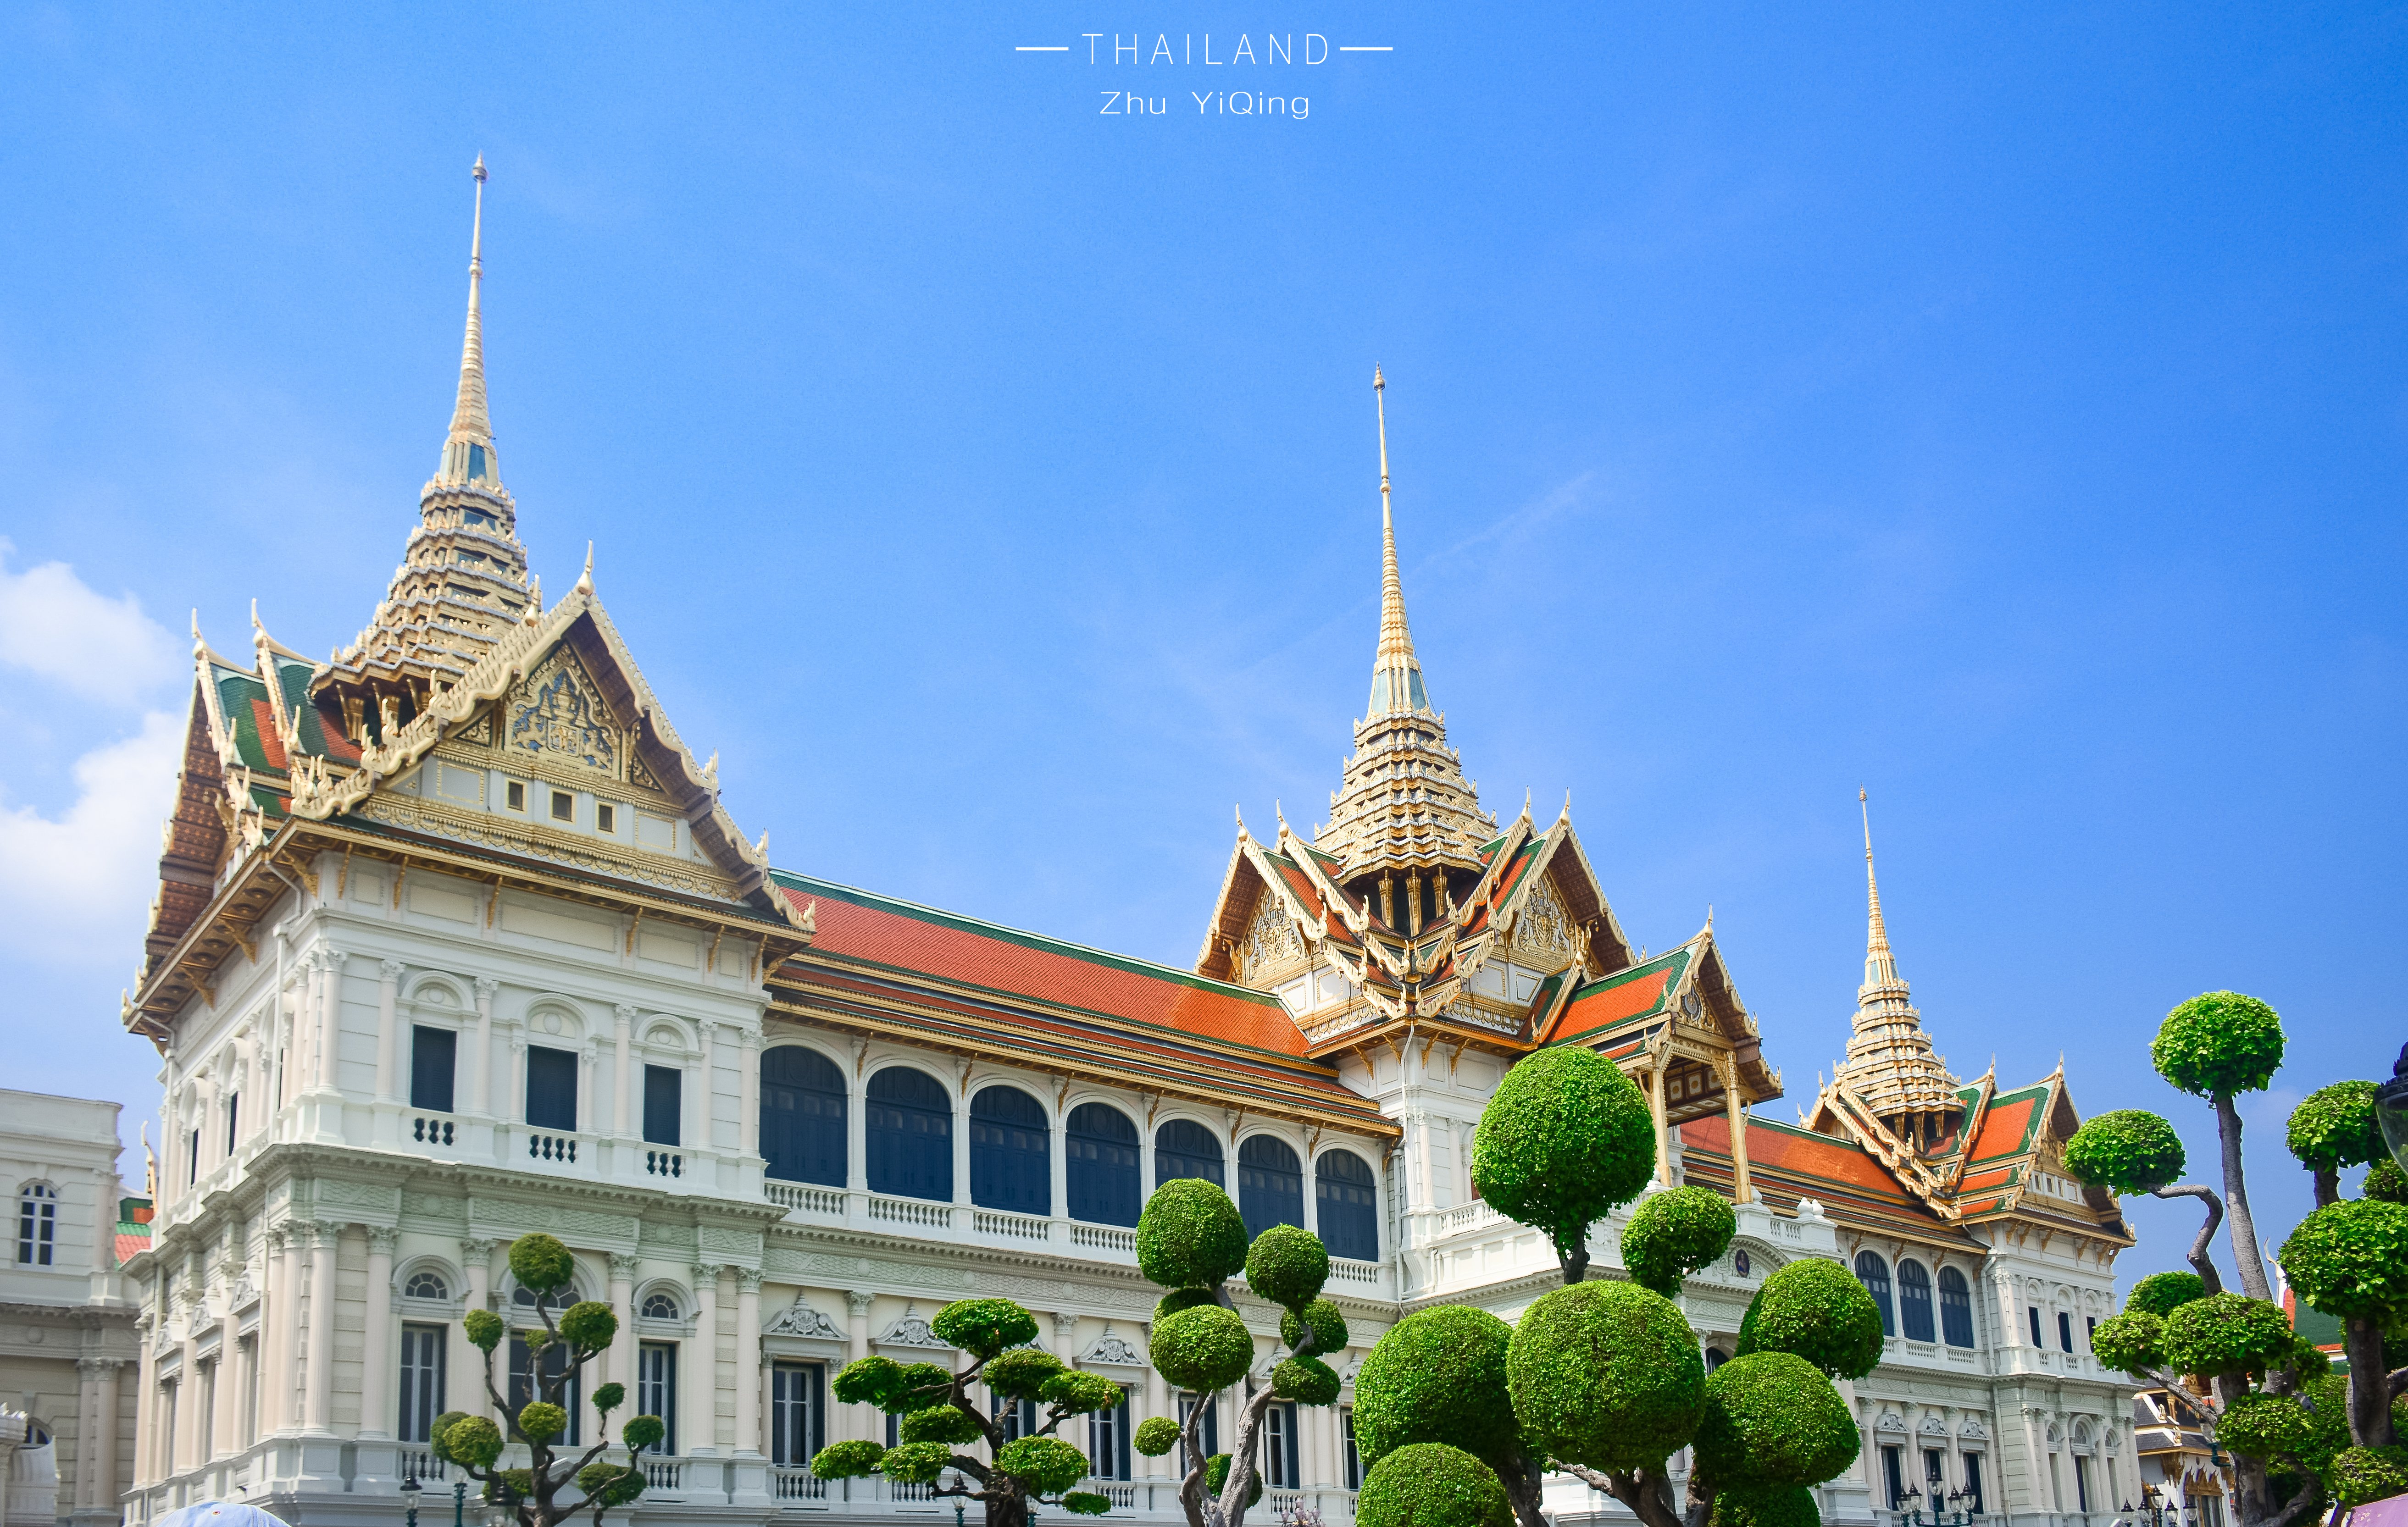 走一回大皇宫,感受泰国百年建筑艺术的心灵震撼